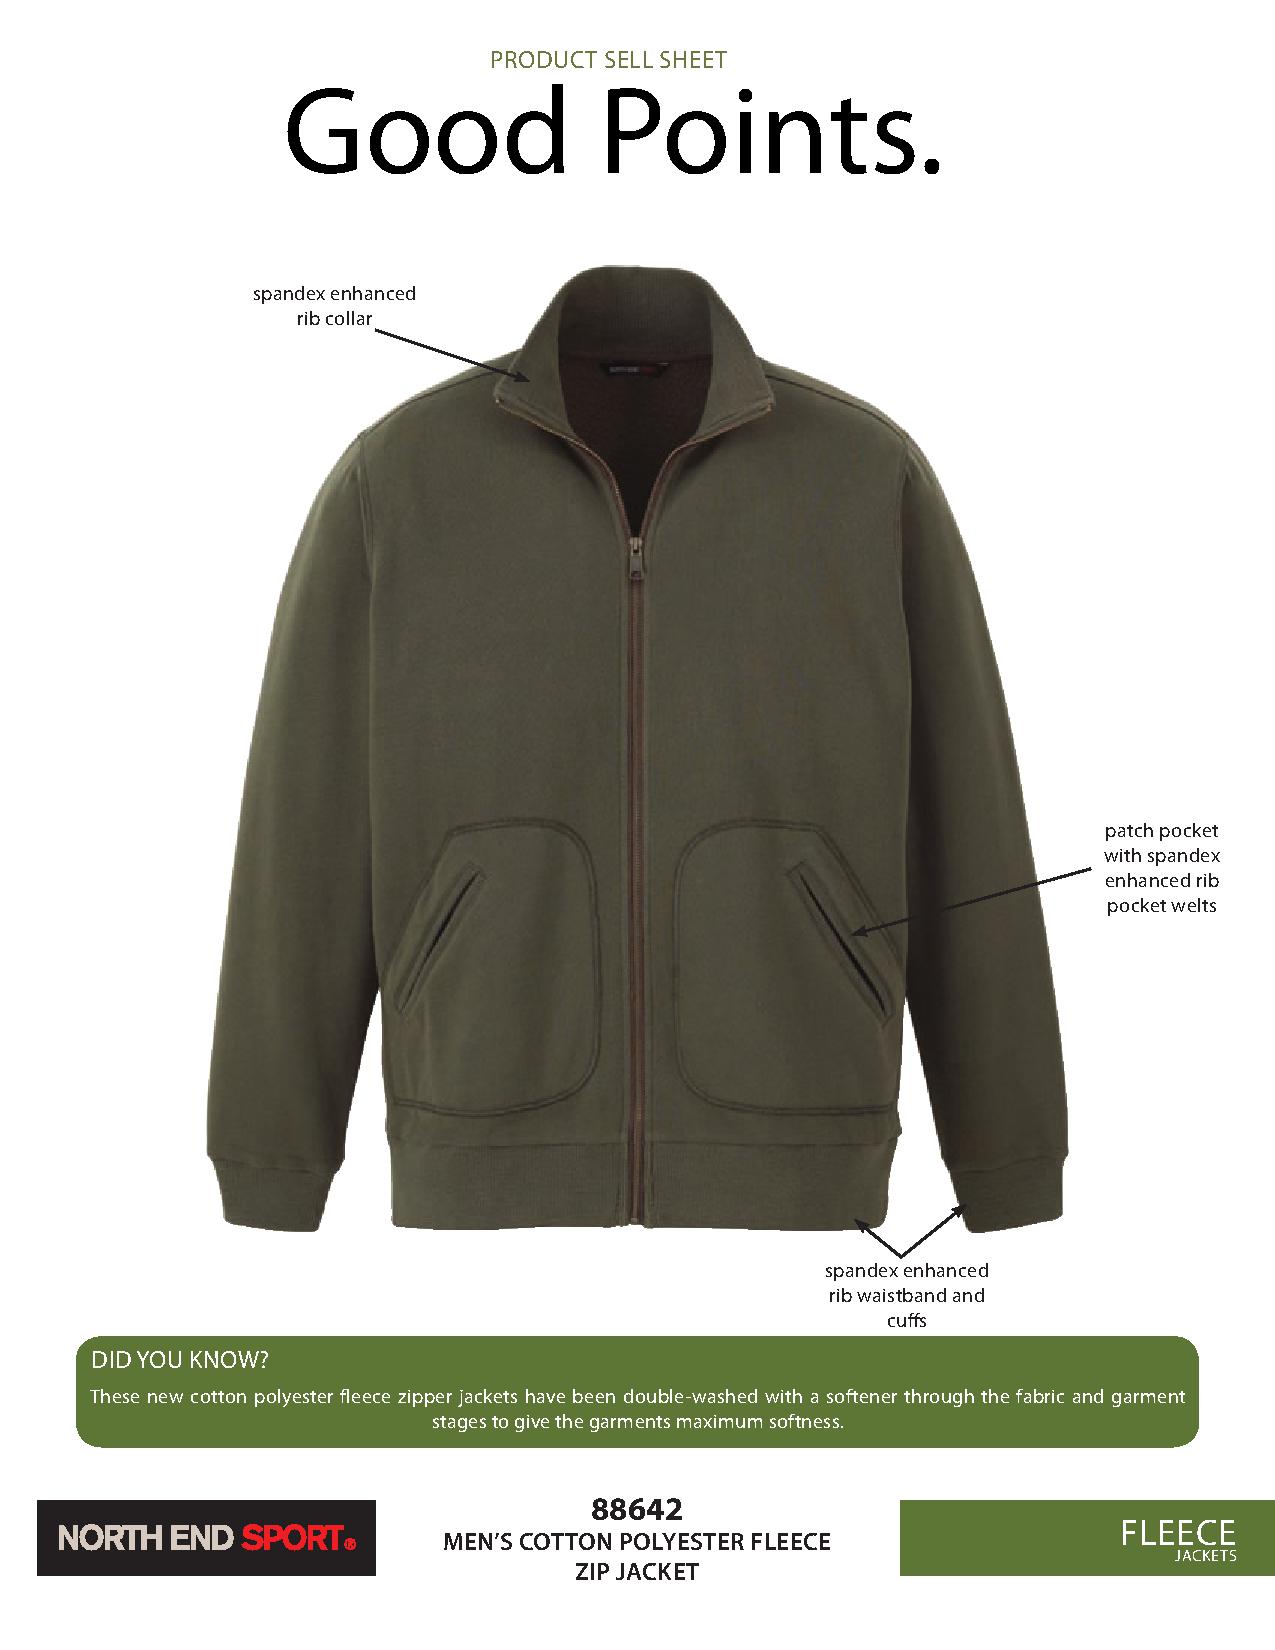 Ash City Cotton/Poly Fleece 88642 - Men's Cotton Polyester Fleece Zip Jacket